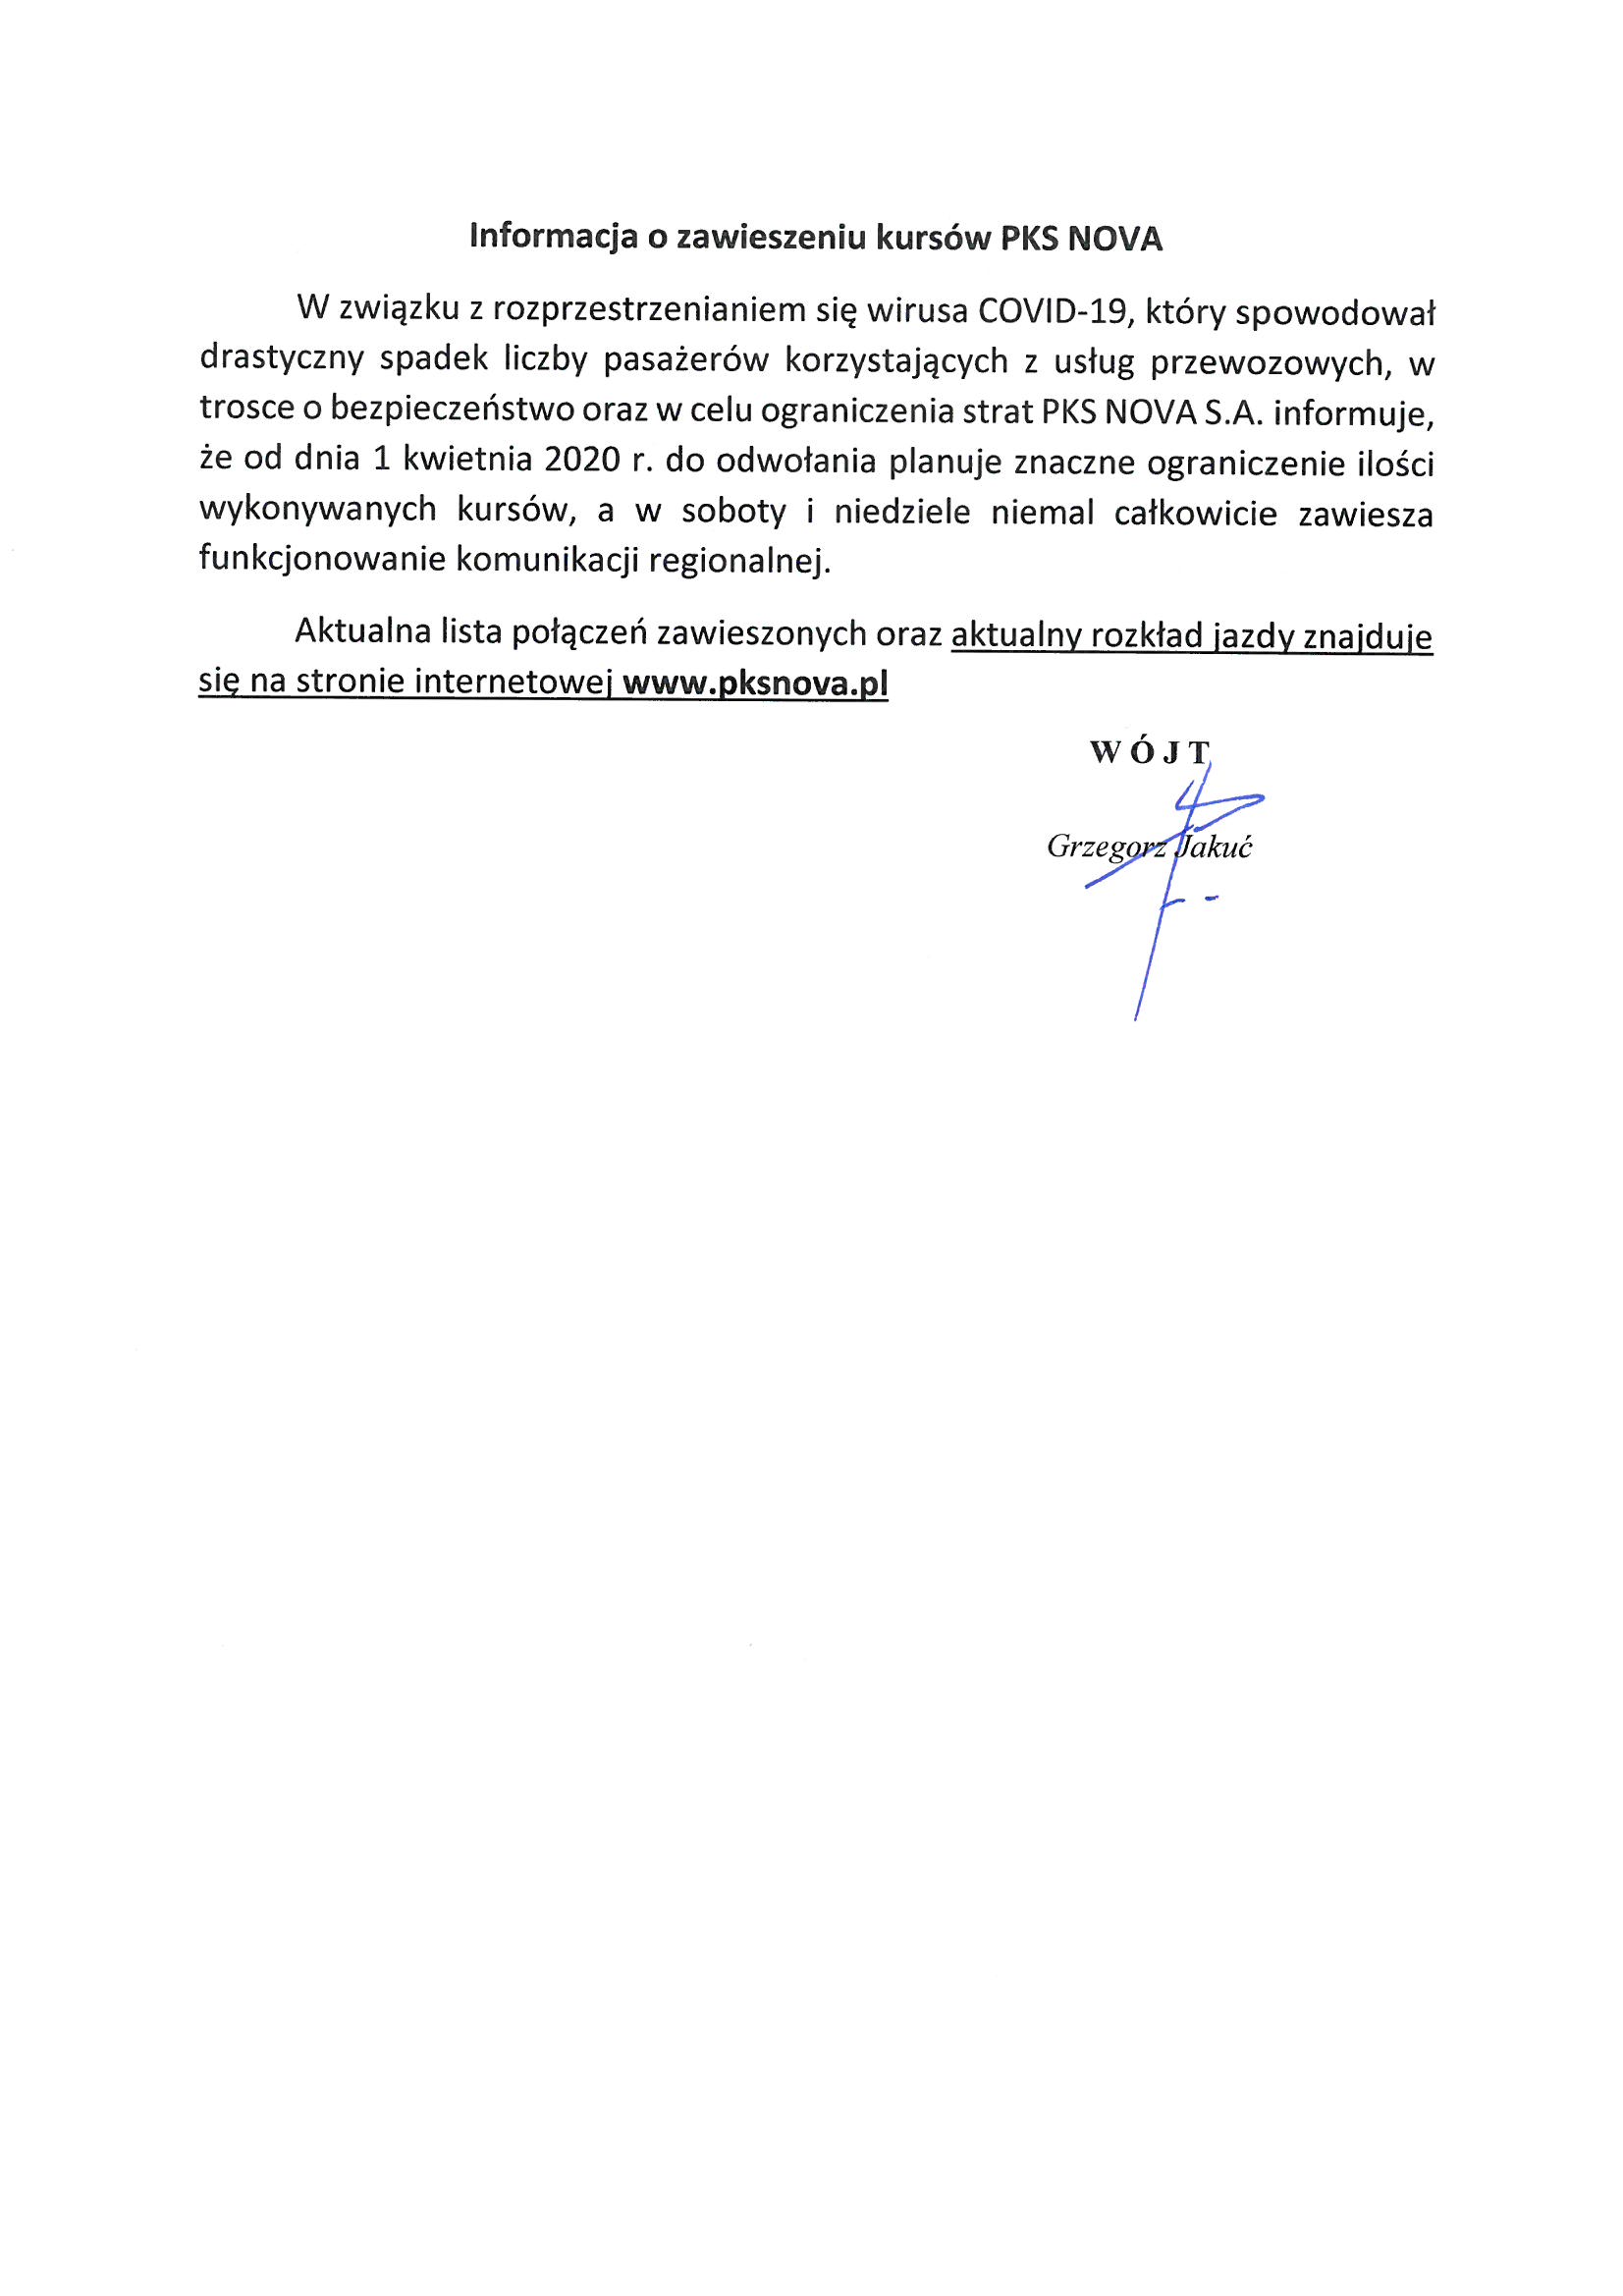 Informacja o zawieszeniu kursow PKS NOVA